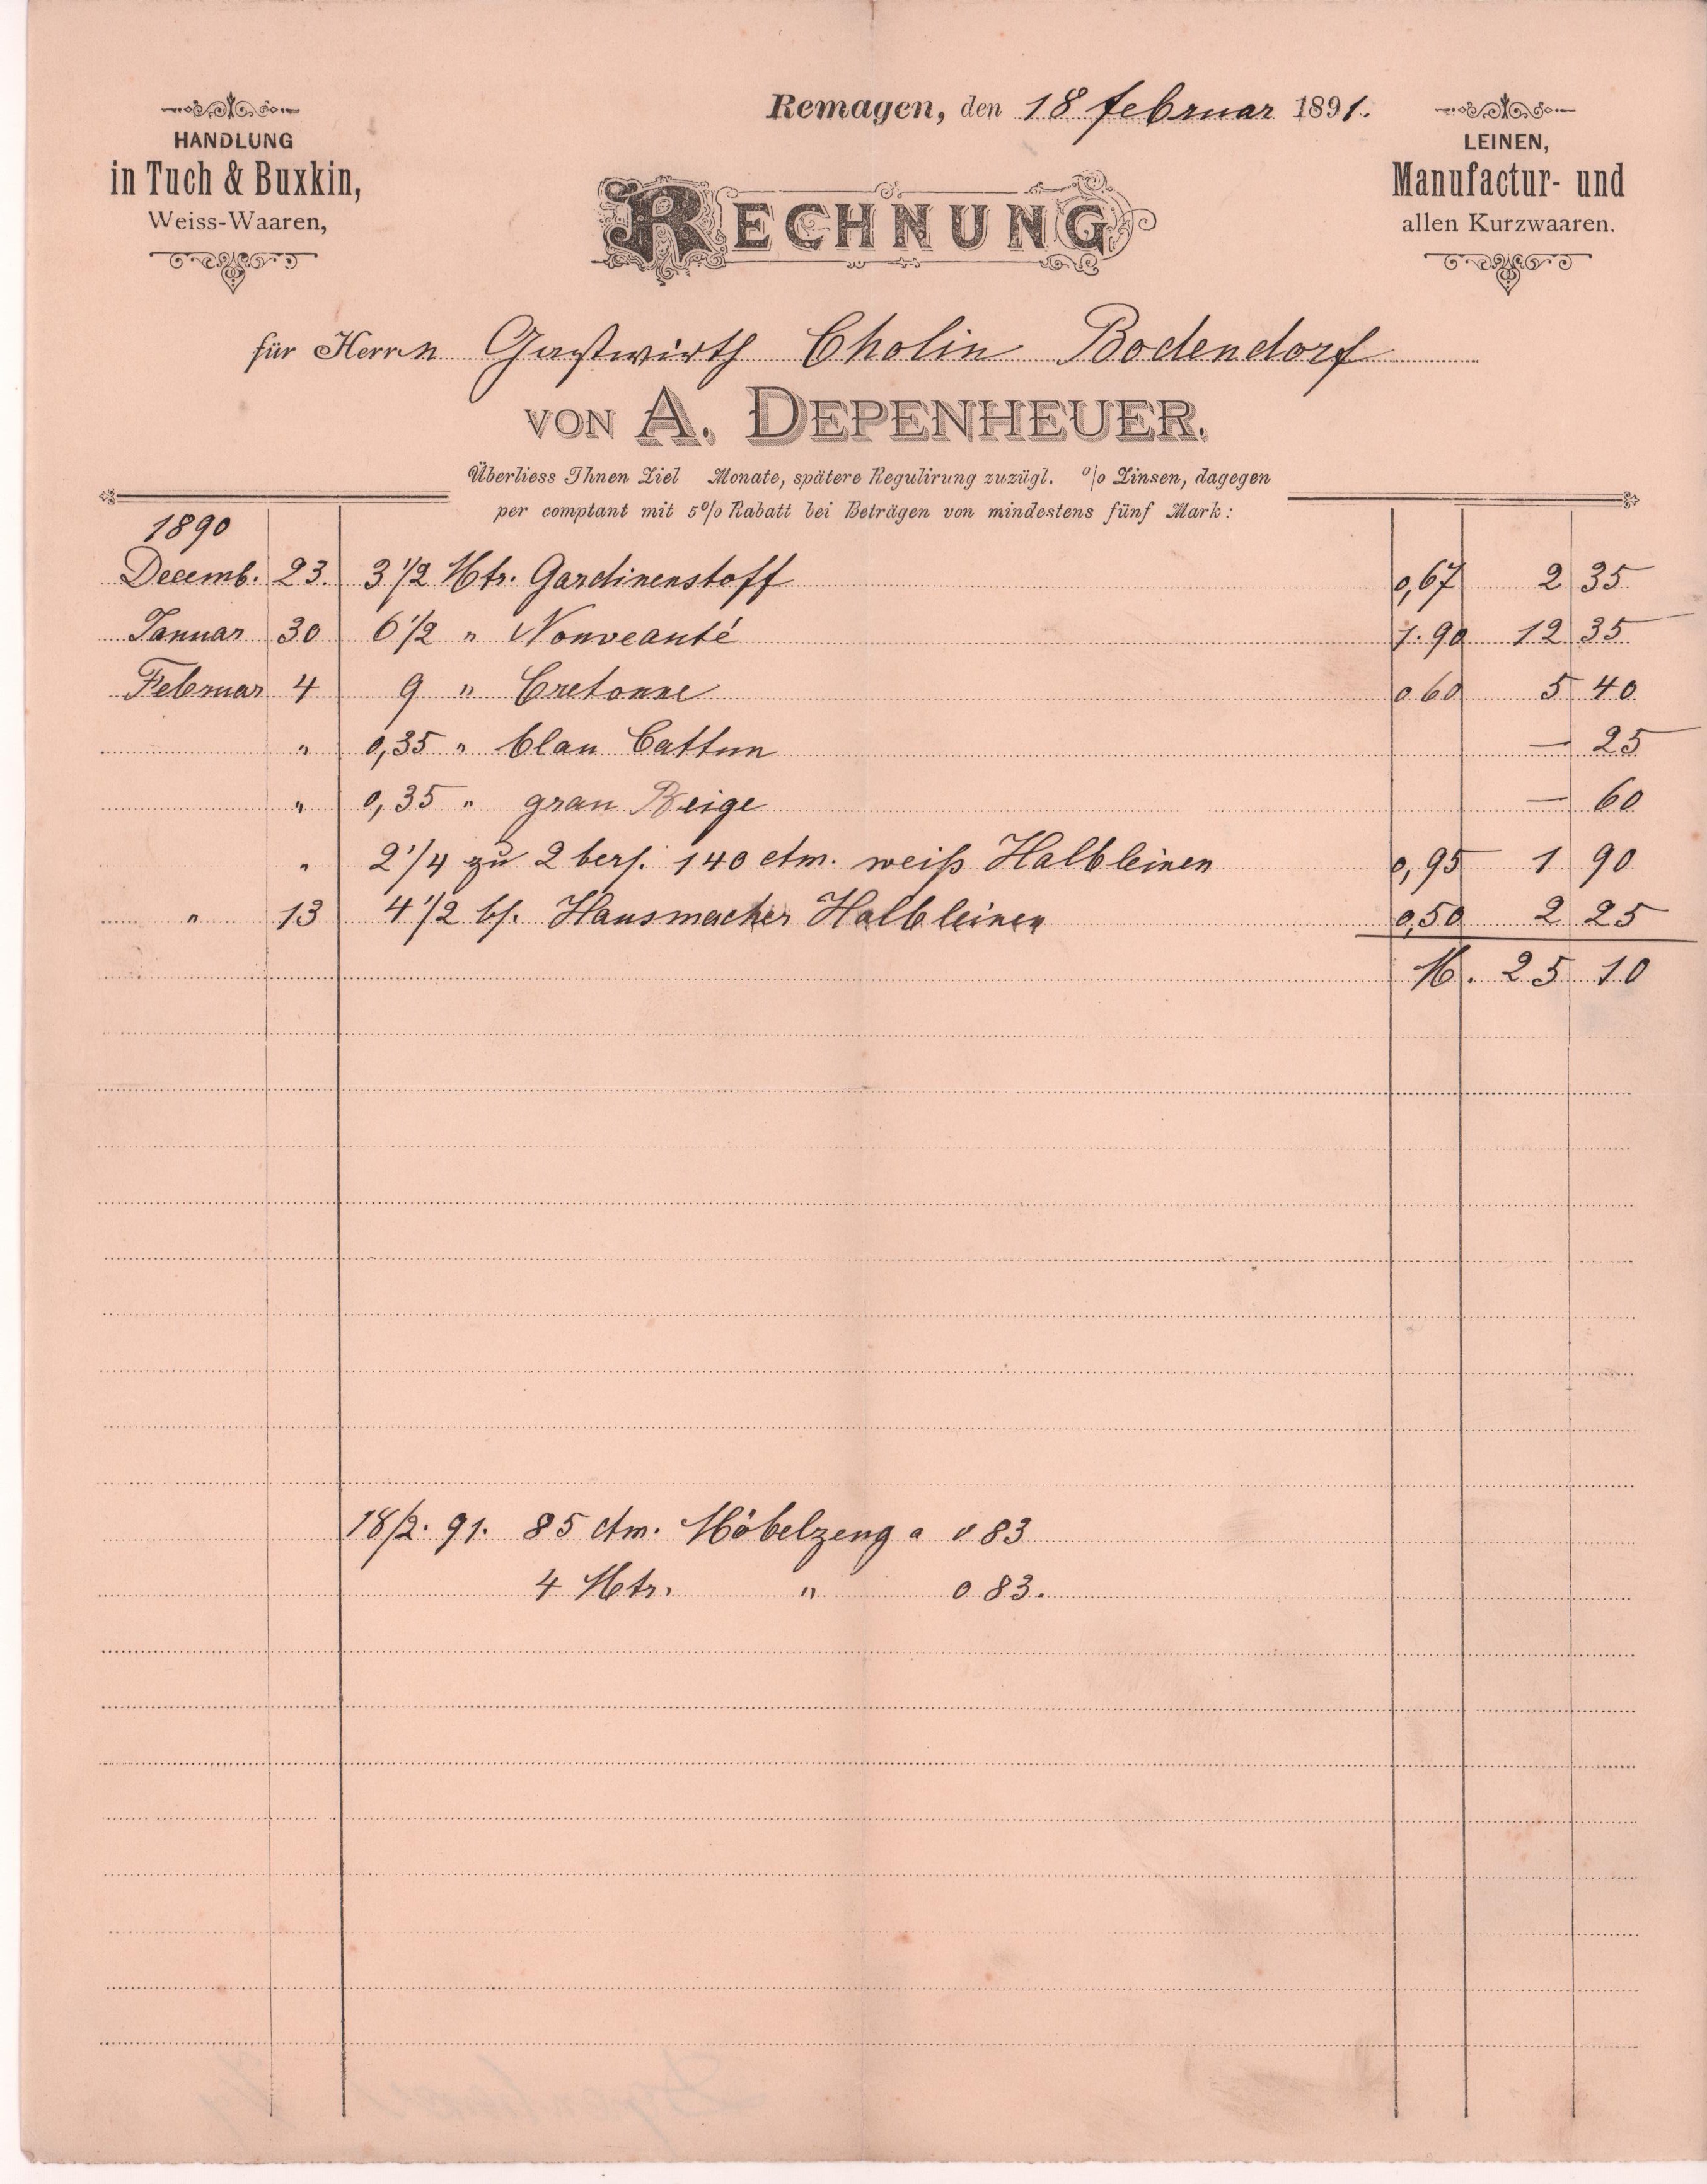 Rechnung von A. Deperheuer in Remagen vom 18. Februar 1891 an Gastwirtschaft Cholin in Bodendorf/Ahr (Heimatarchiv Bad Bodendorf CC BY-NC-SA)